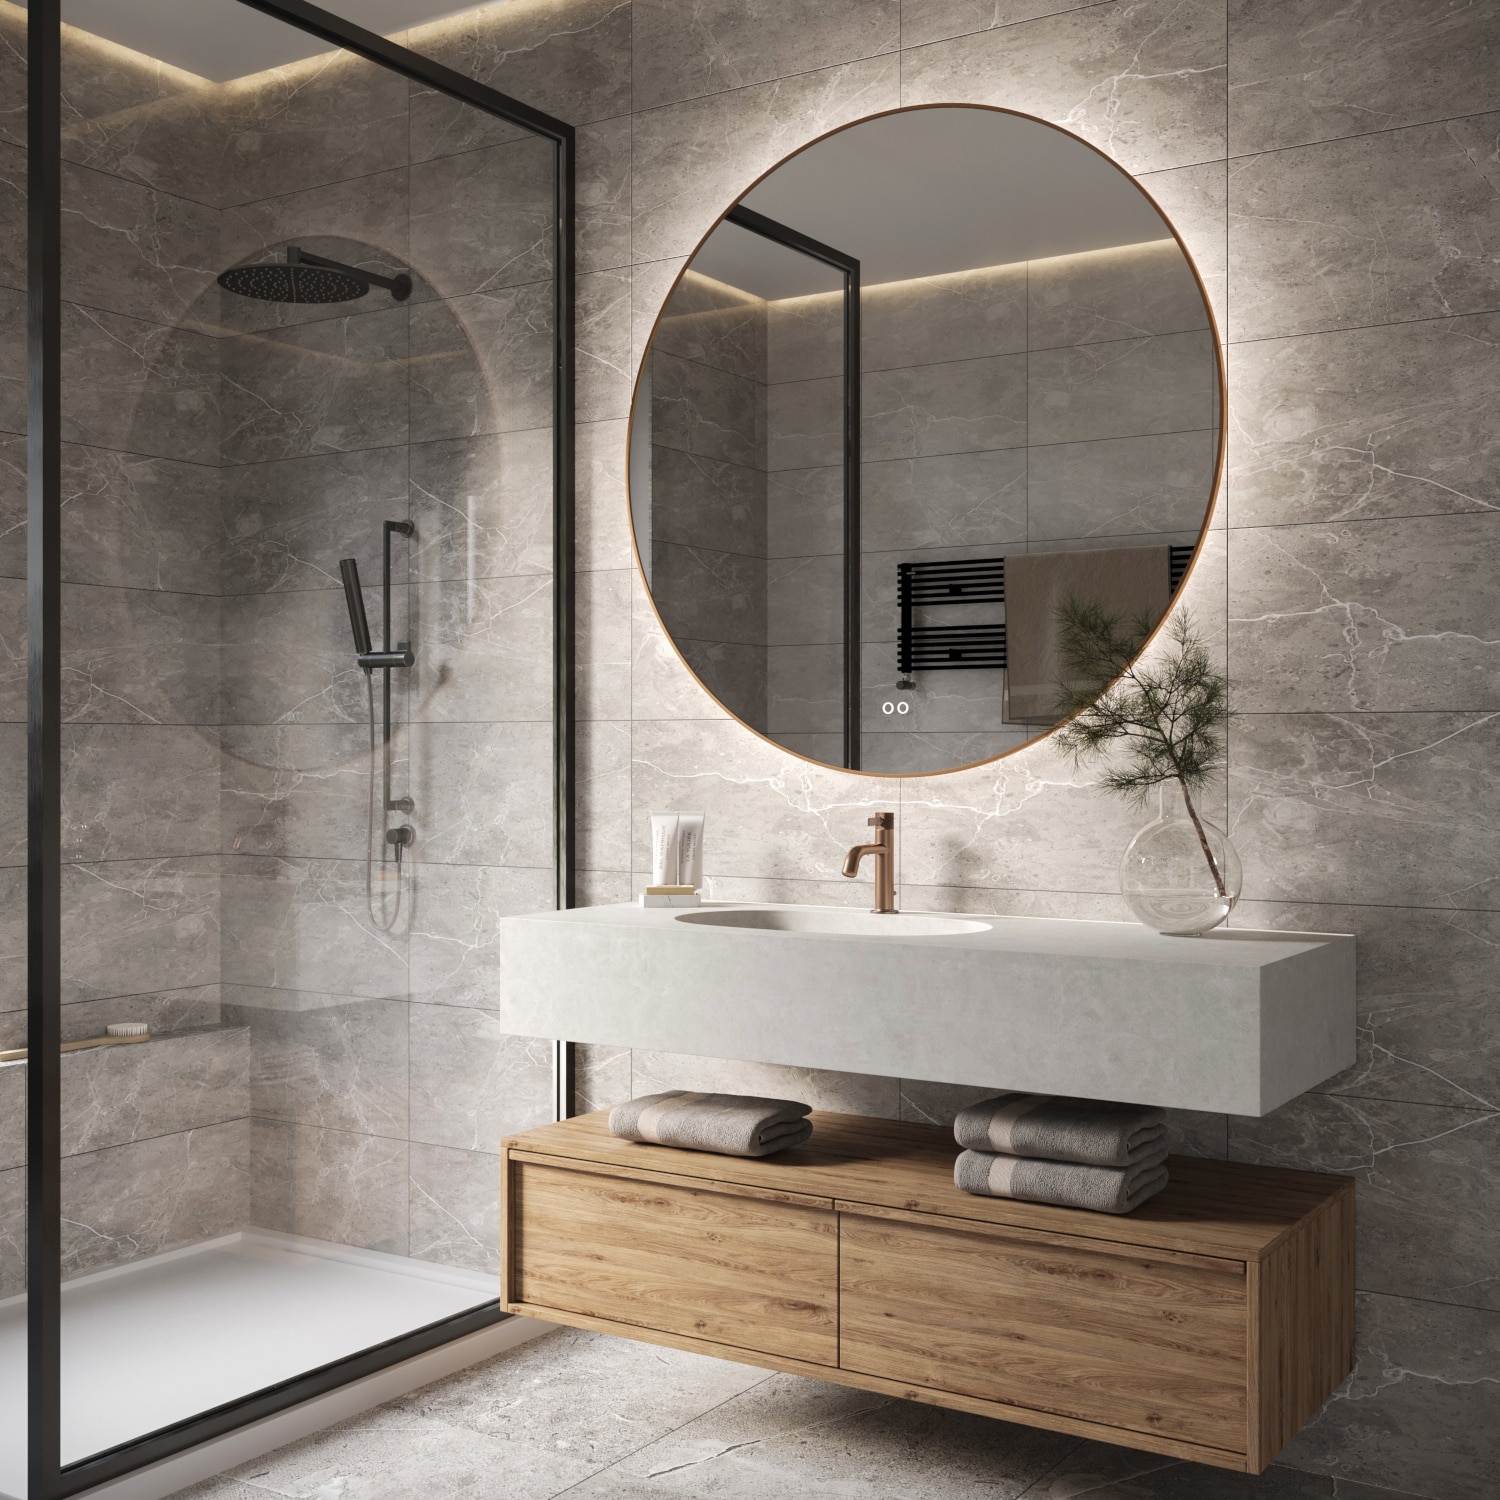 Deze koperen badkamer spiegel is eenvoudig aan de wand te monteren met de bijgeleverde montage materialen